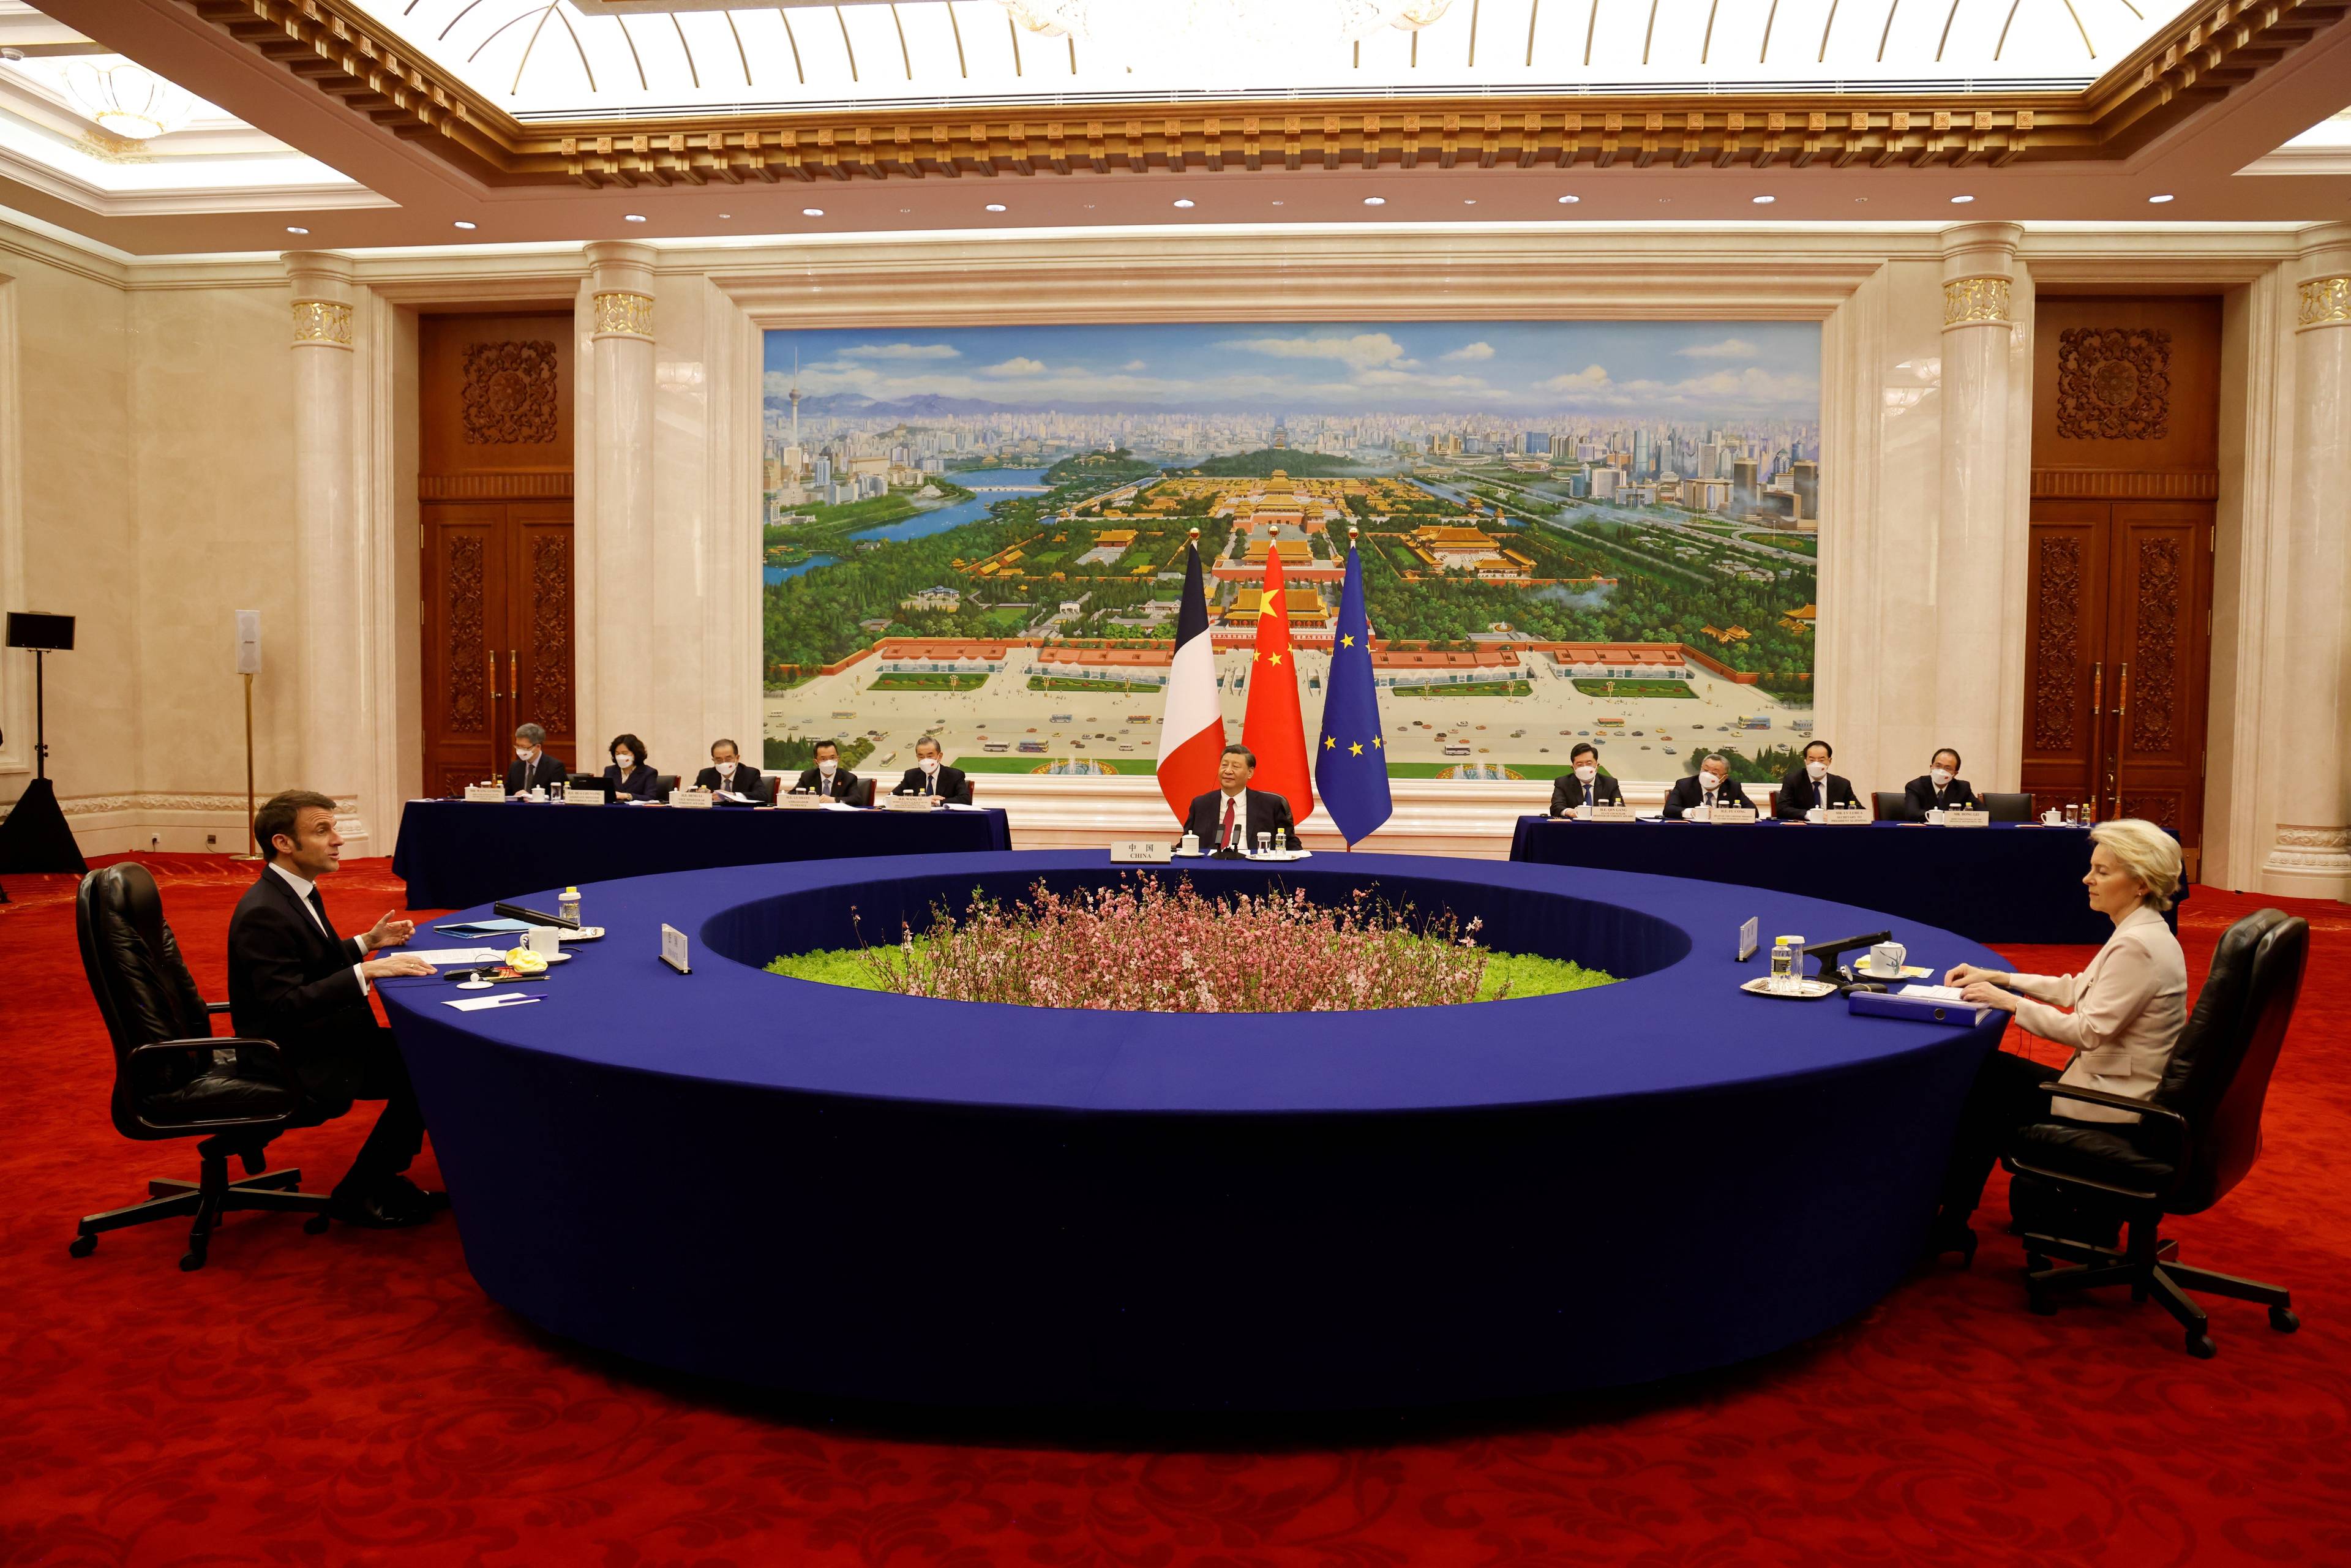 Przy wielkim okrytym ciemnoniebieską tkaniną okrągłym stole siedzą: kobieta i dwaj mężczyźni. W tle flagi Chin, Francji i Unii Europejskiej